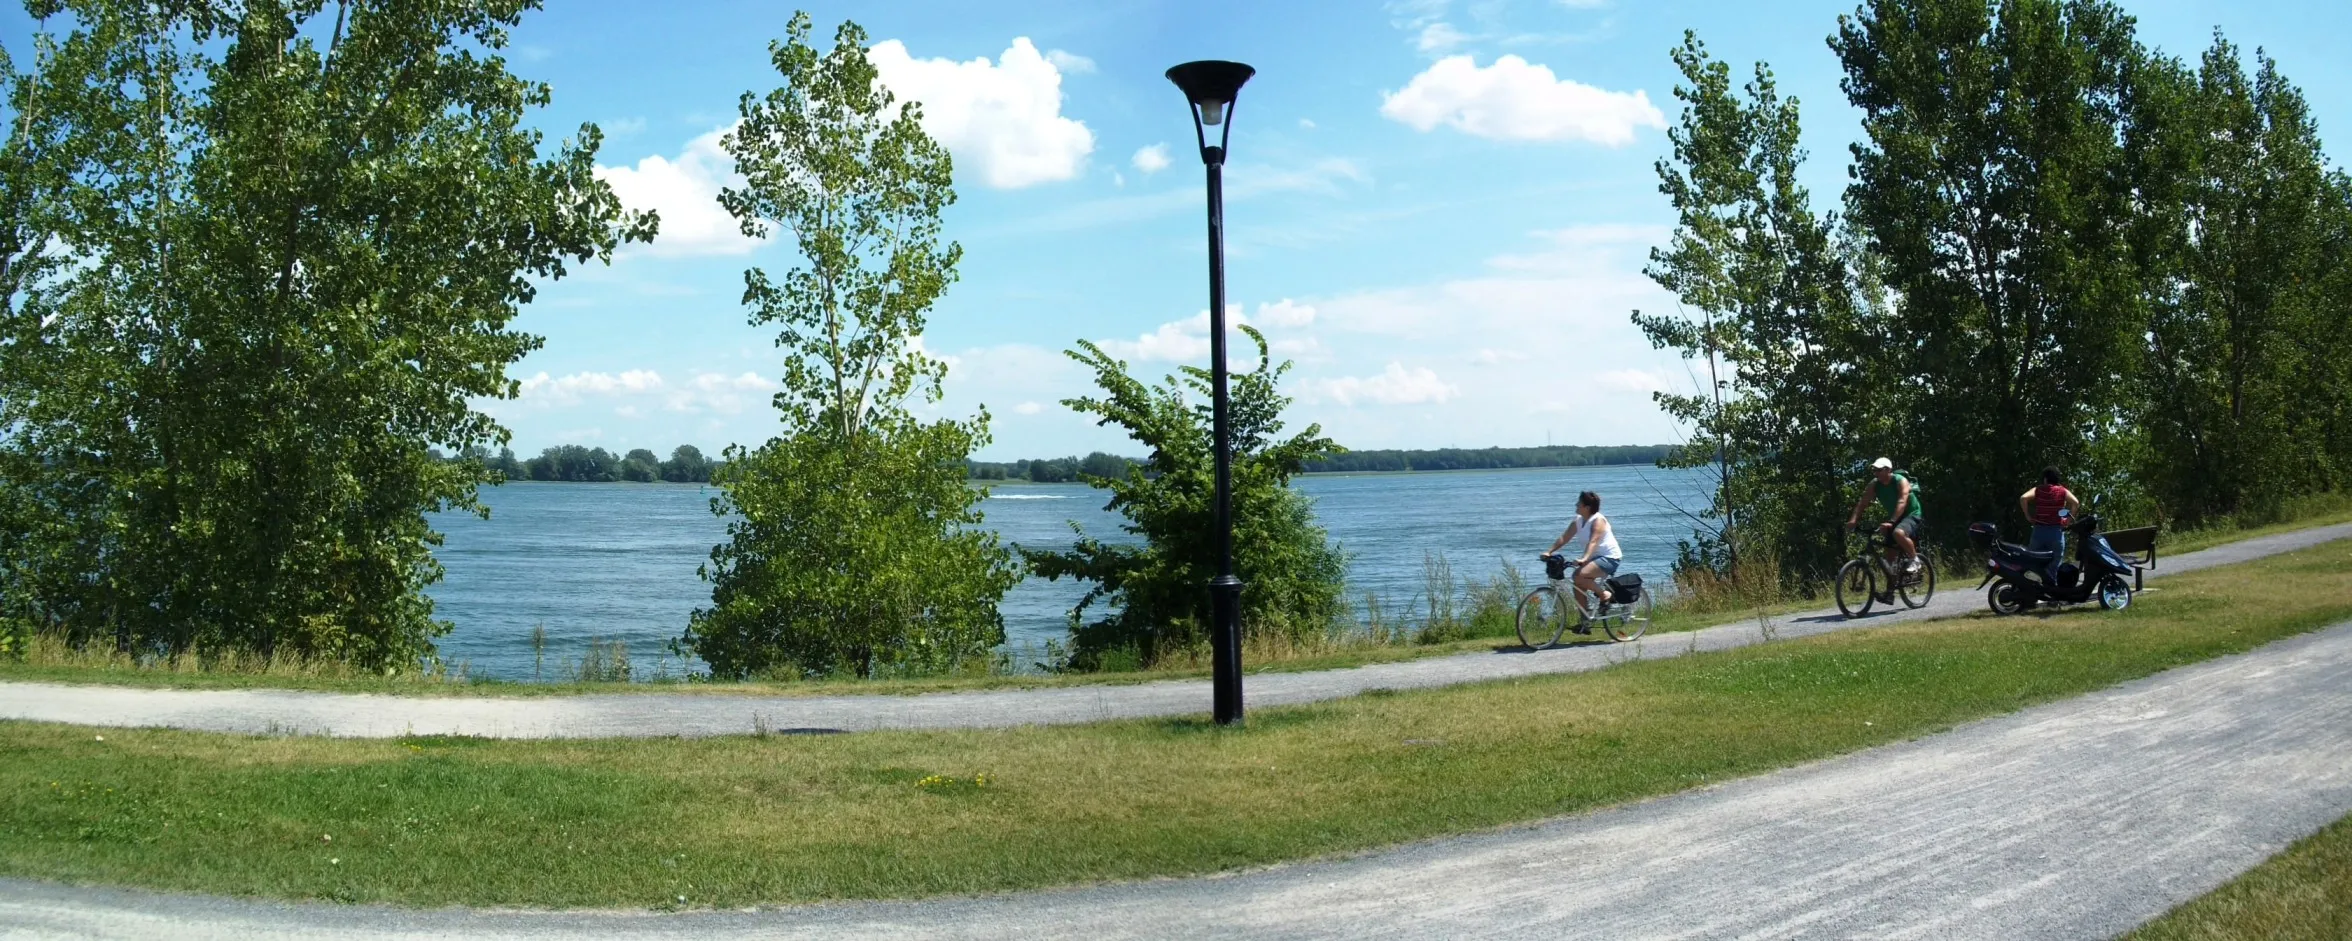 Vue sur le paysage marin du Parc Bellerive à Montréal au Québec. CC BY-SA 3.0 Jeangagnon 